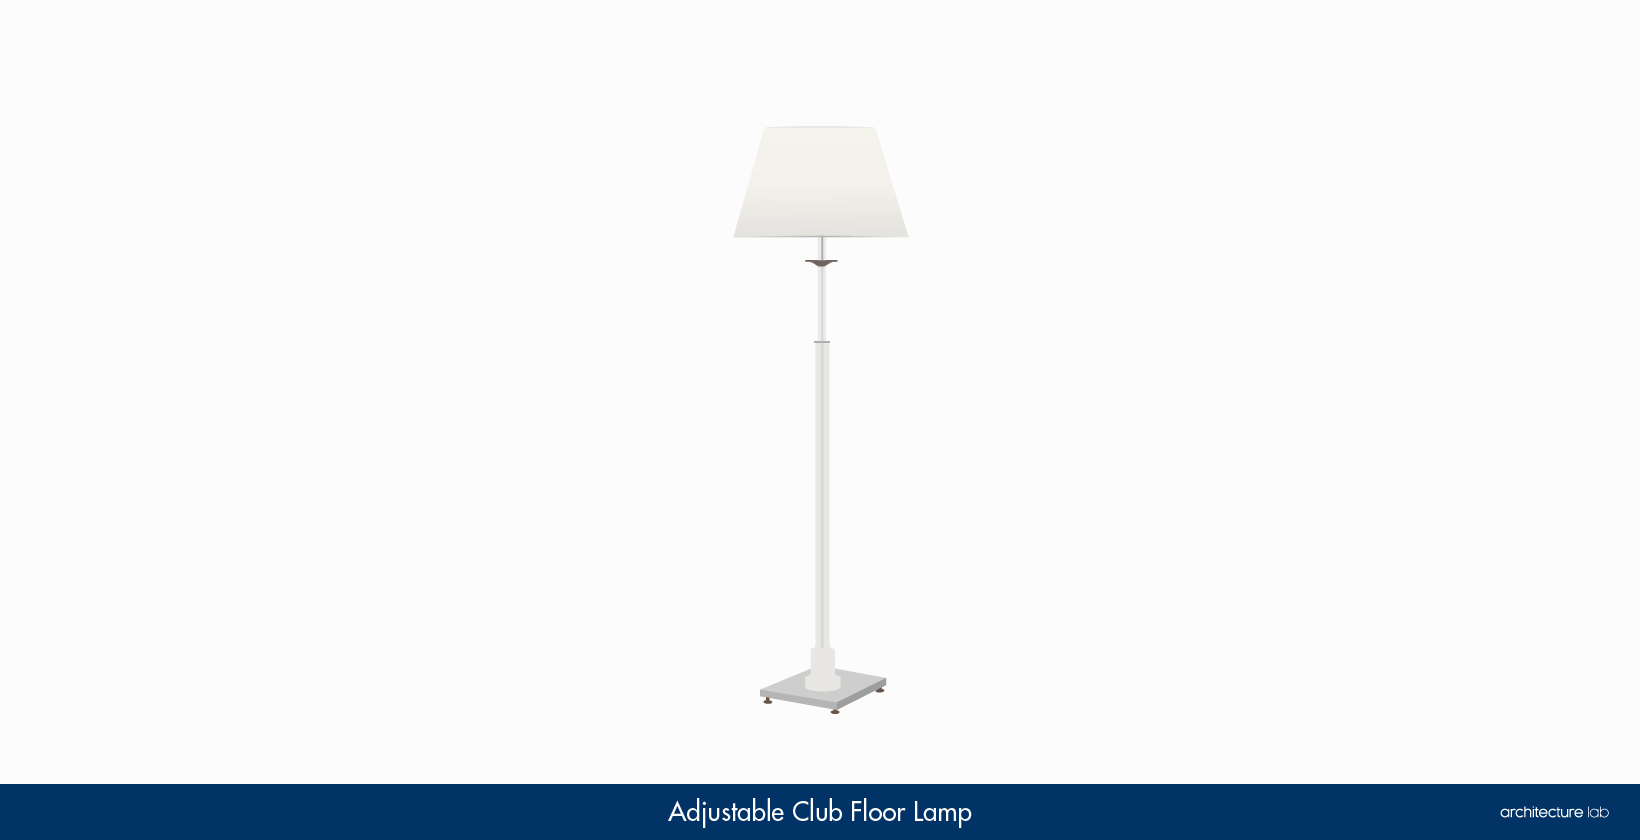 6. Adjustable club floor lamp